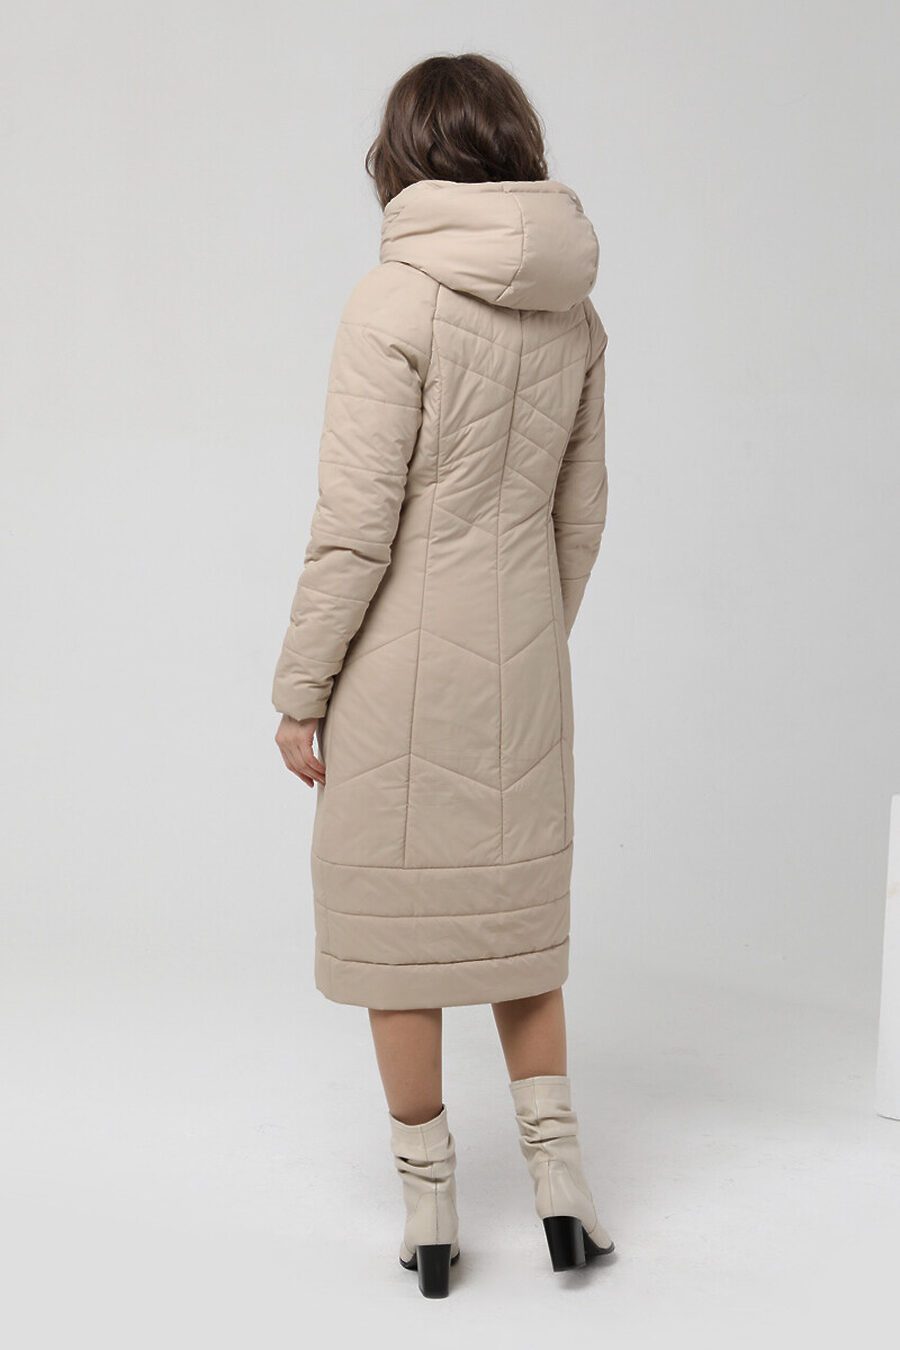 Пальто DIWAY (684797), купить в Moyo.moda